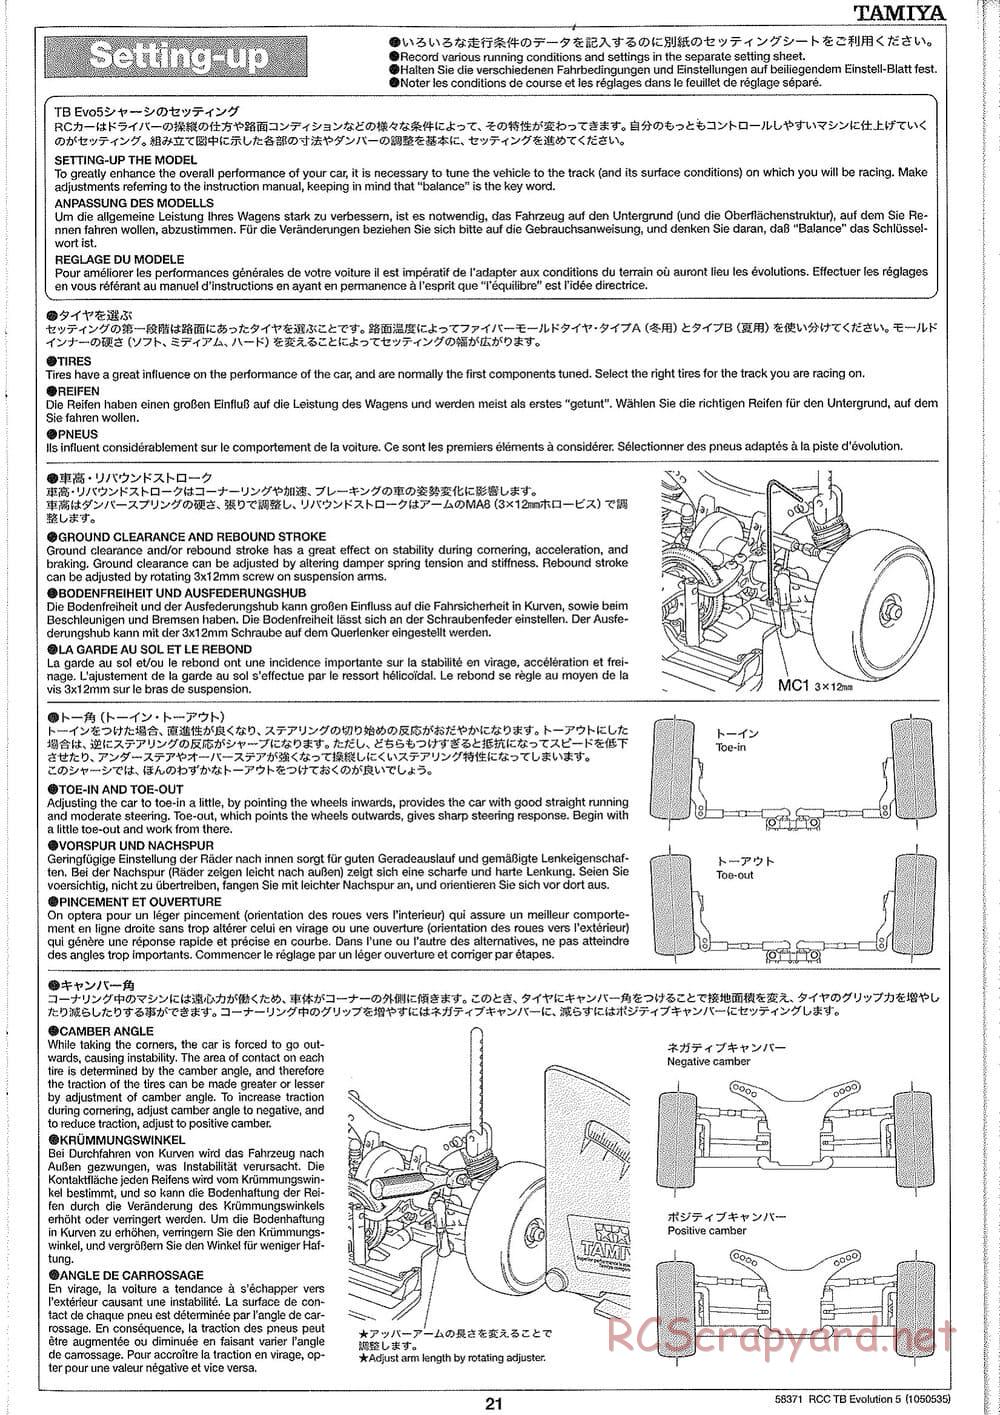 Tamiya - TB Evolution V Chassis - Manual - Page 21